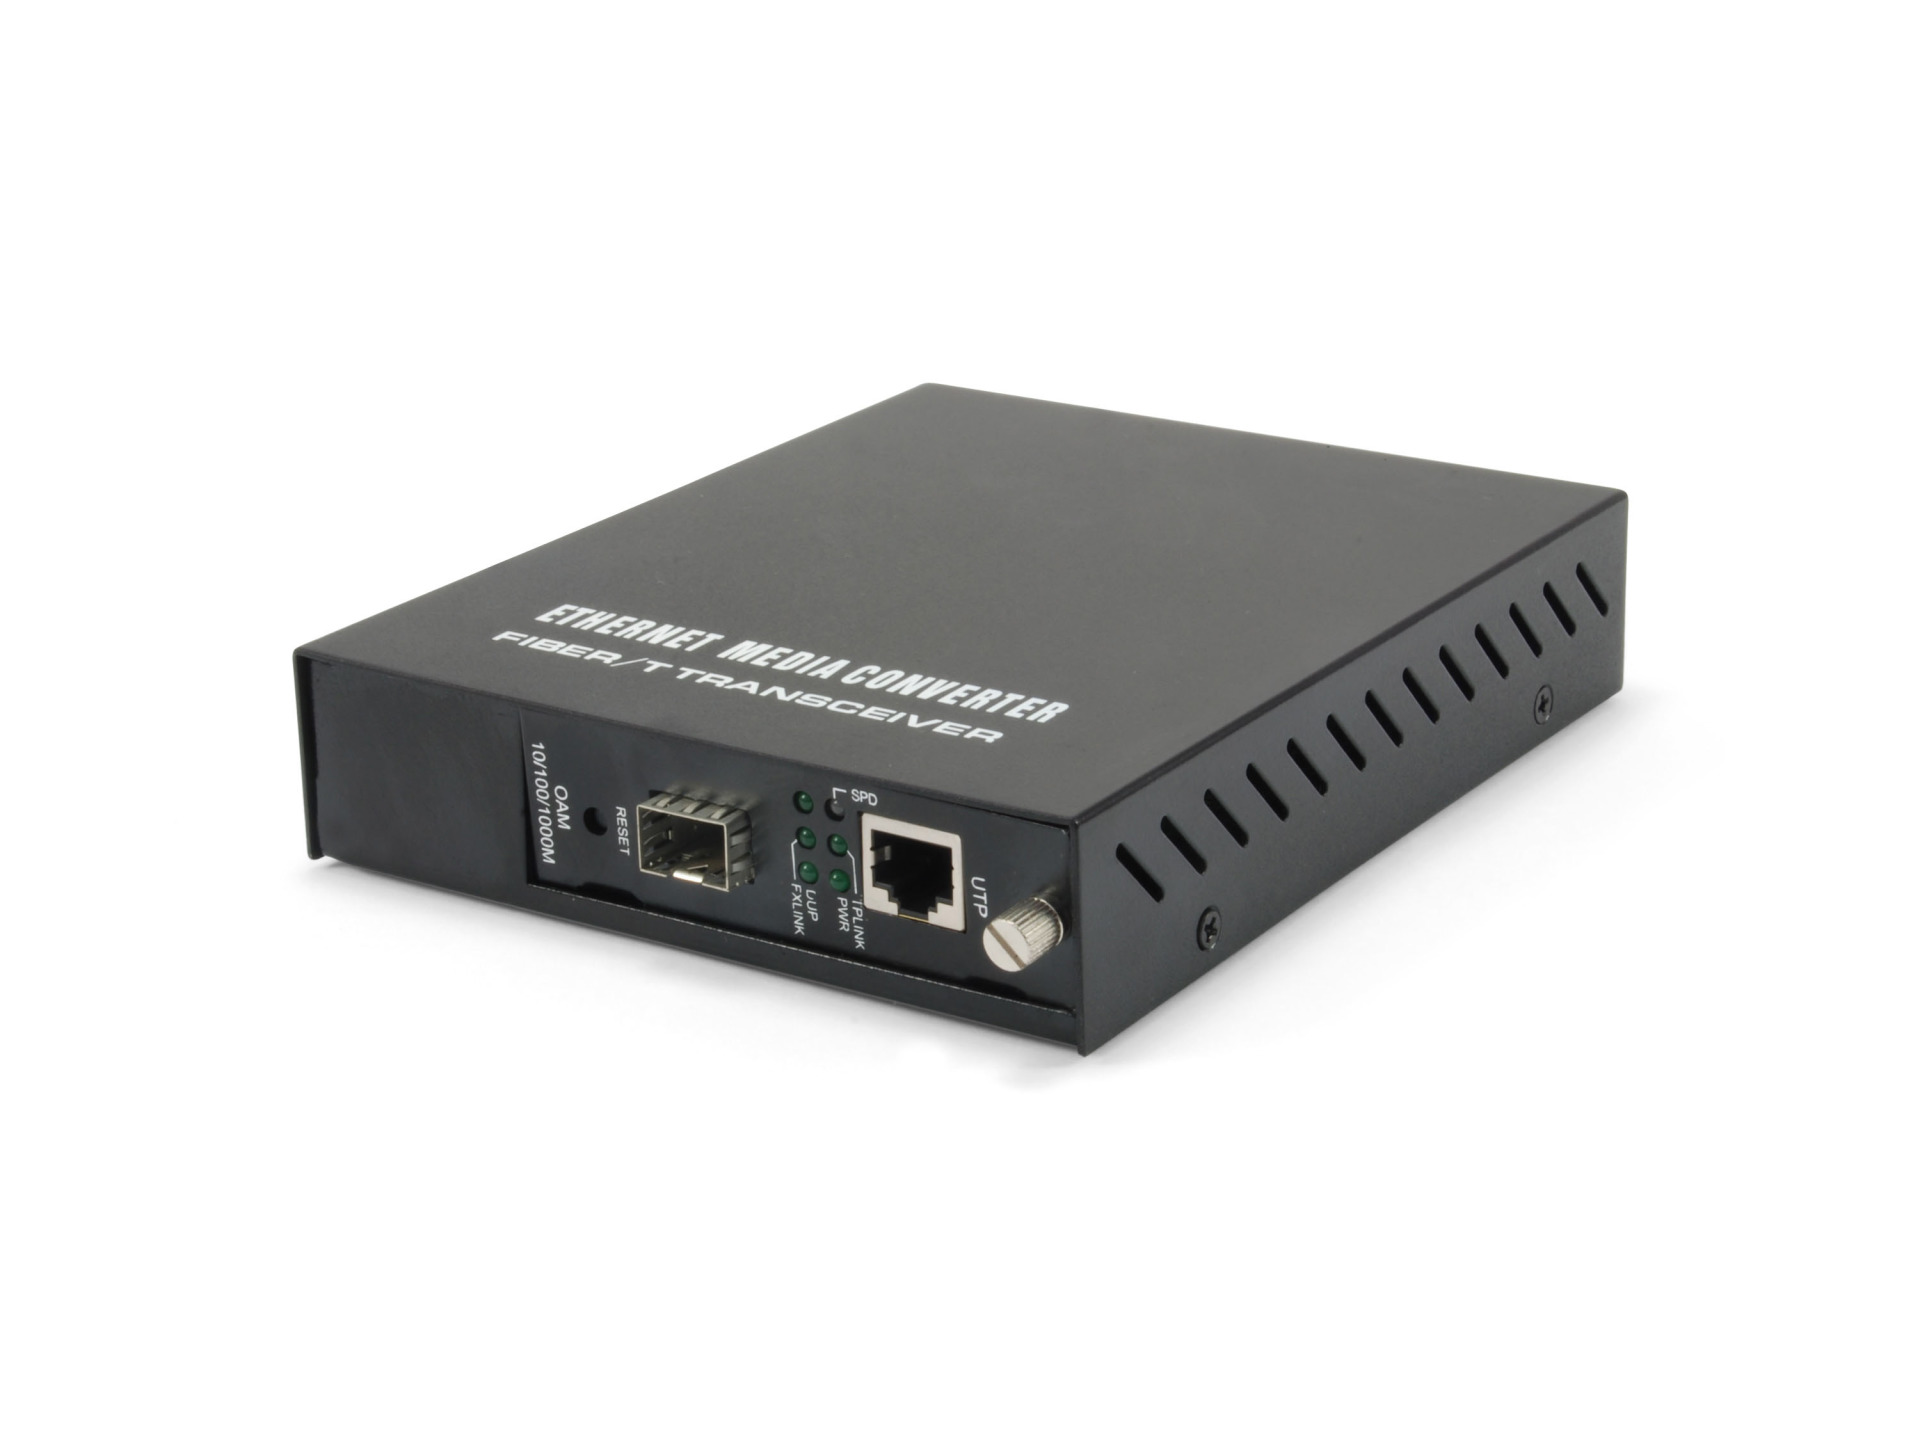 Managed Media Converter, Gigabit Ethernet, RJ45-SFP, internal power